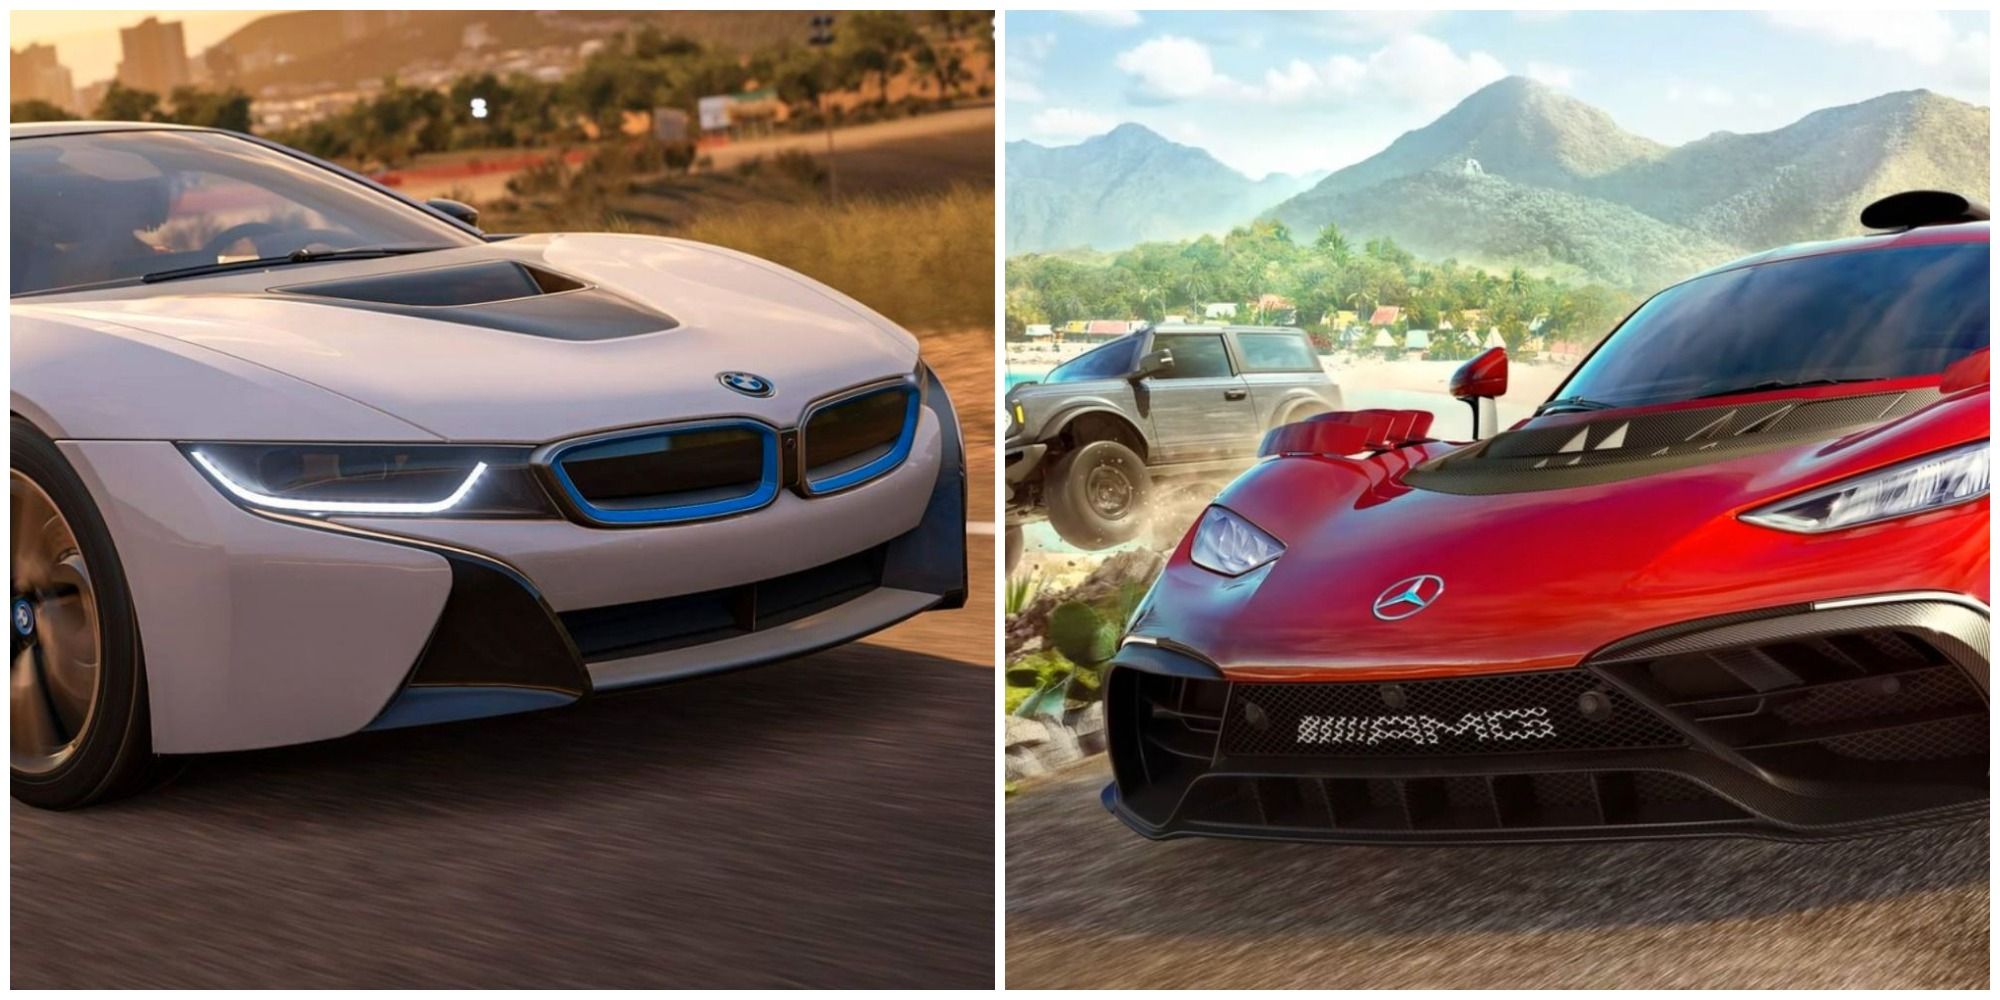 Forza Horizon 5 recebe 5 novos BMW, Corvette híbrido e Rivian - Automais